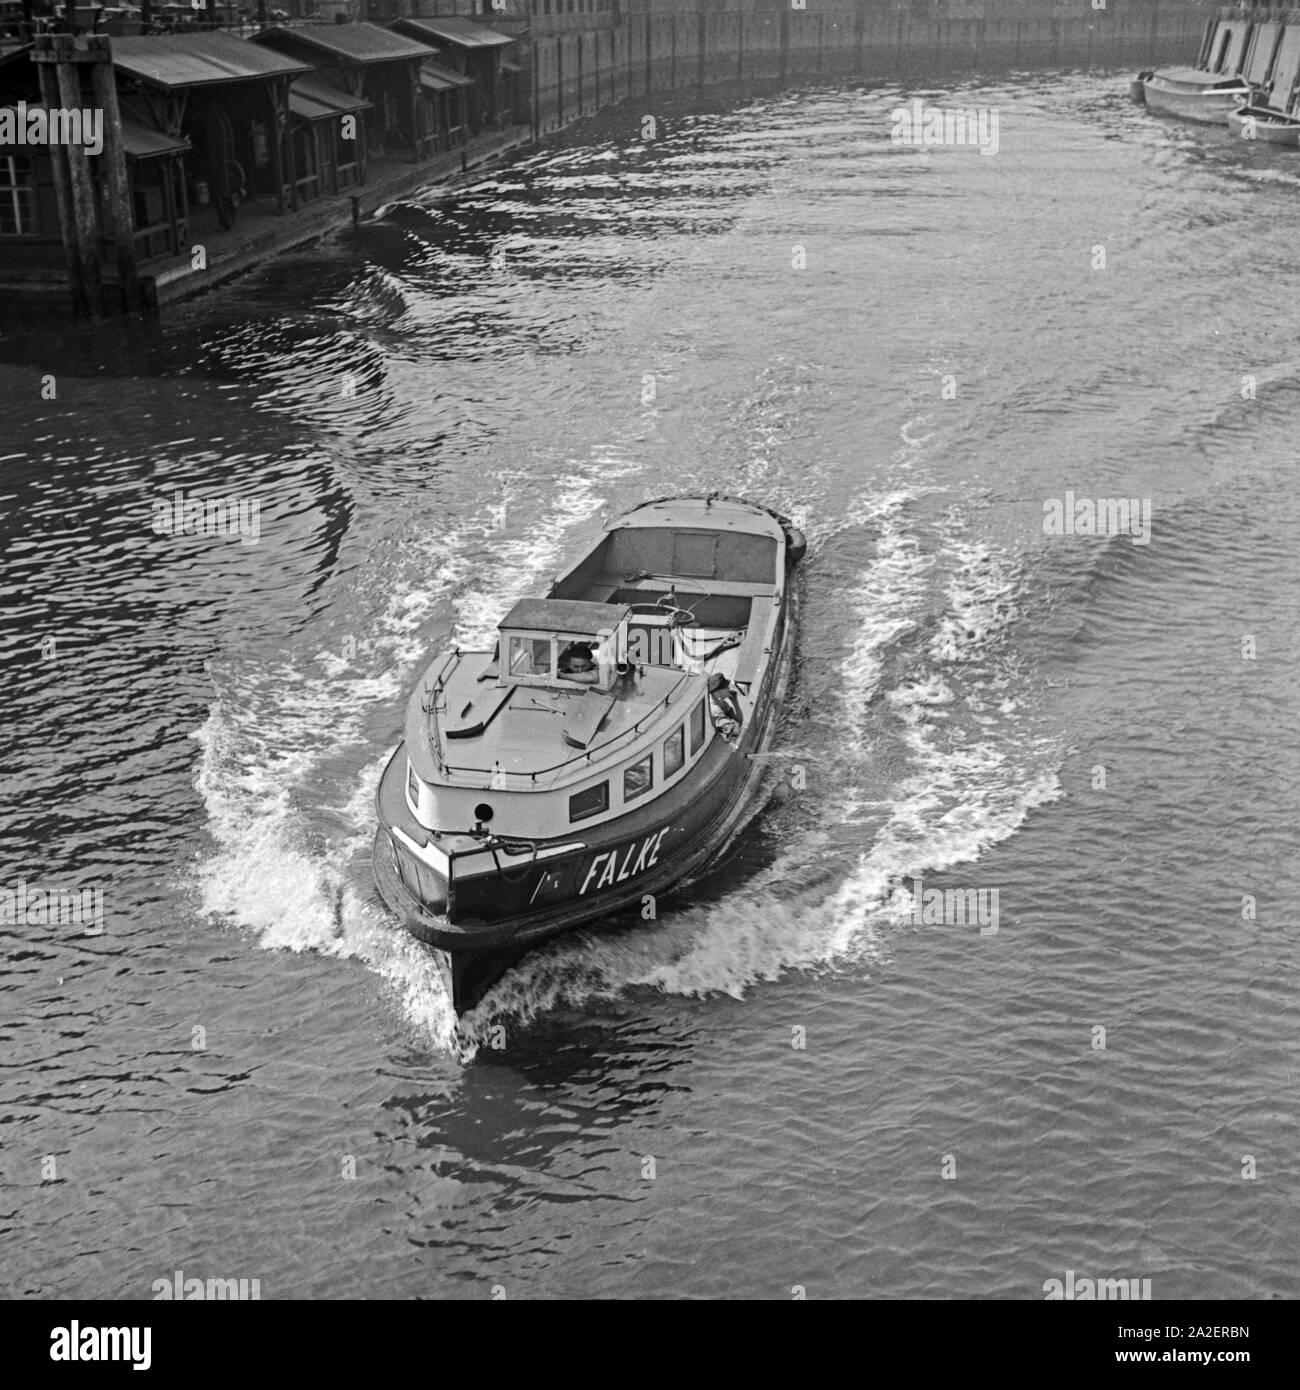 Die Barkasse 'Falke' im Hafen von Deutz, Deutschland 1930er Jahre. Barch 'Falke' at Deutz harbor, Germany 1930s. Stock Photo